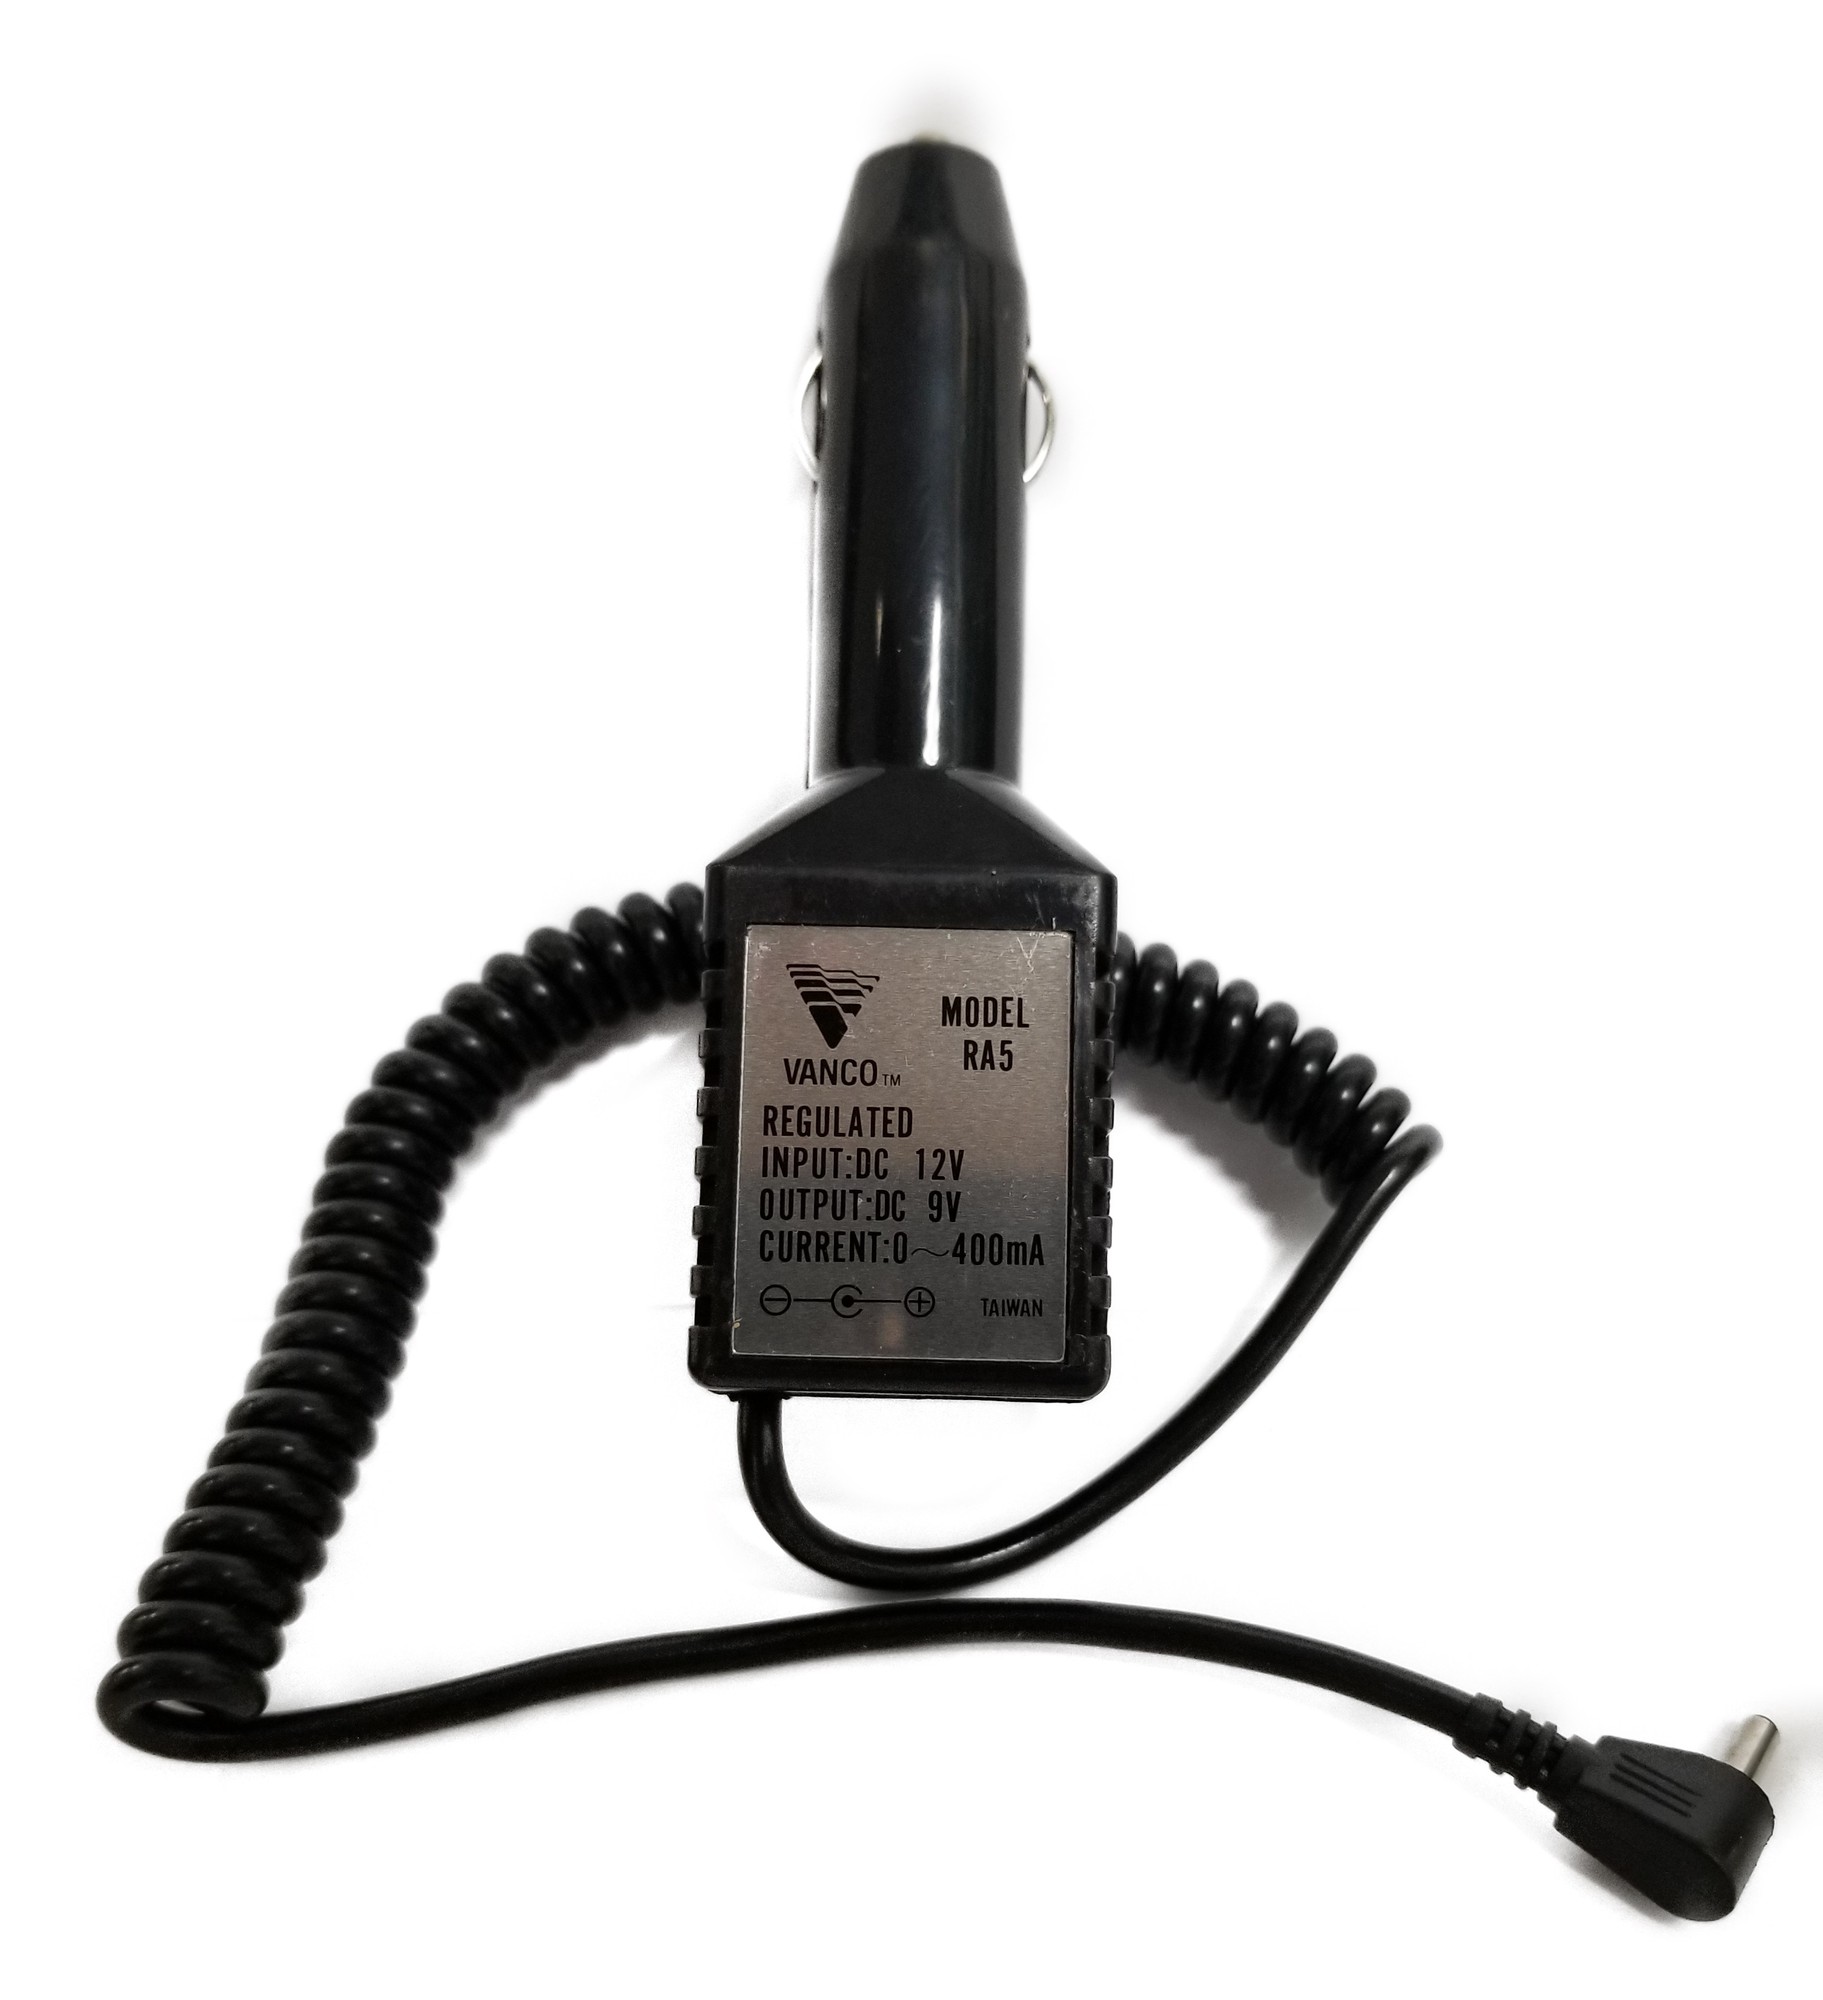 1.3Mm, 9 Volt Cigarette Lighter Plug, Radar